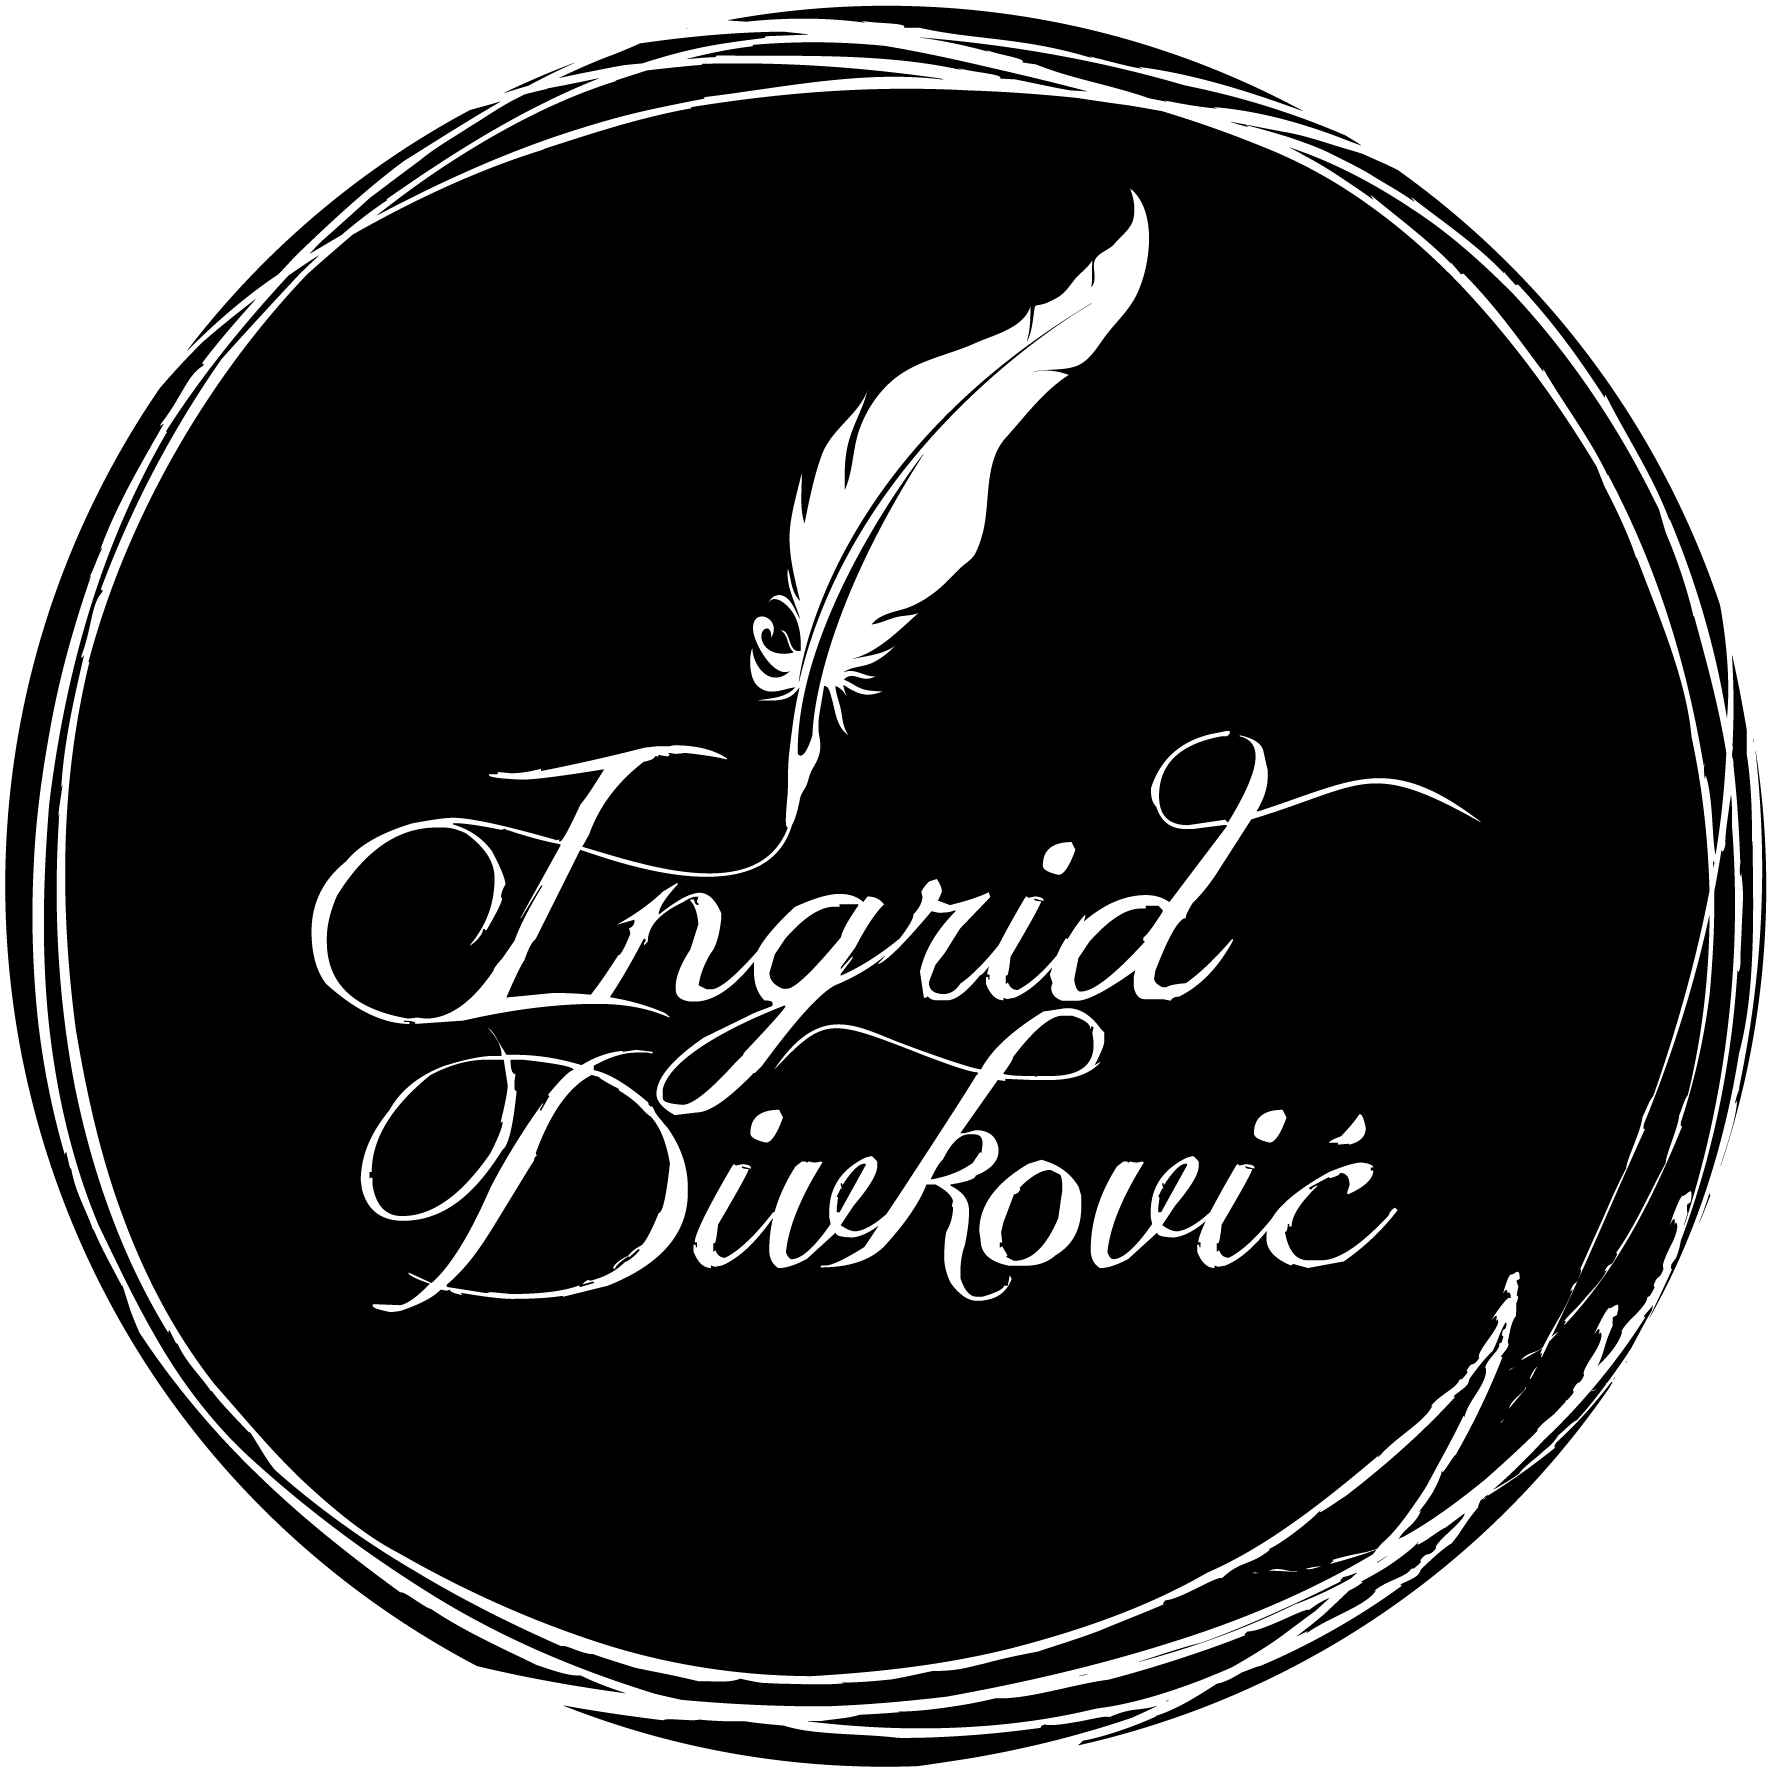 Crni logo bez podloge za slike